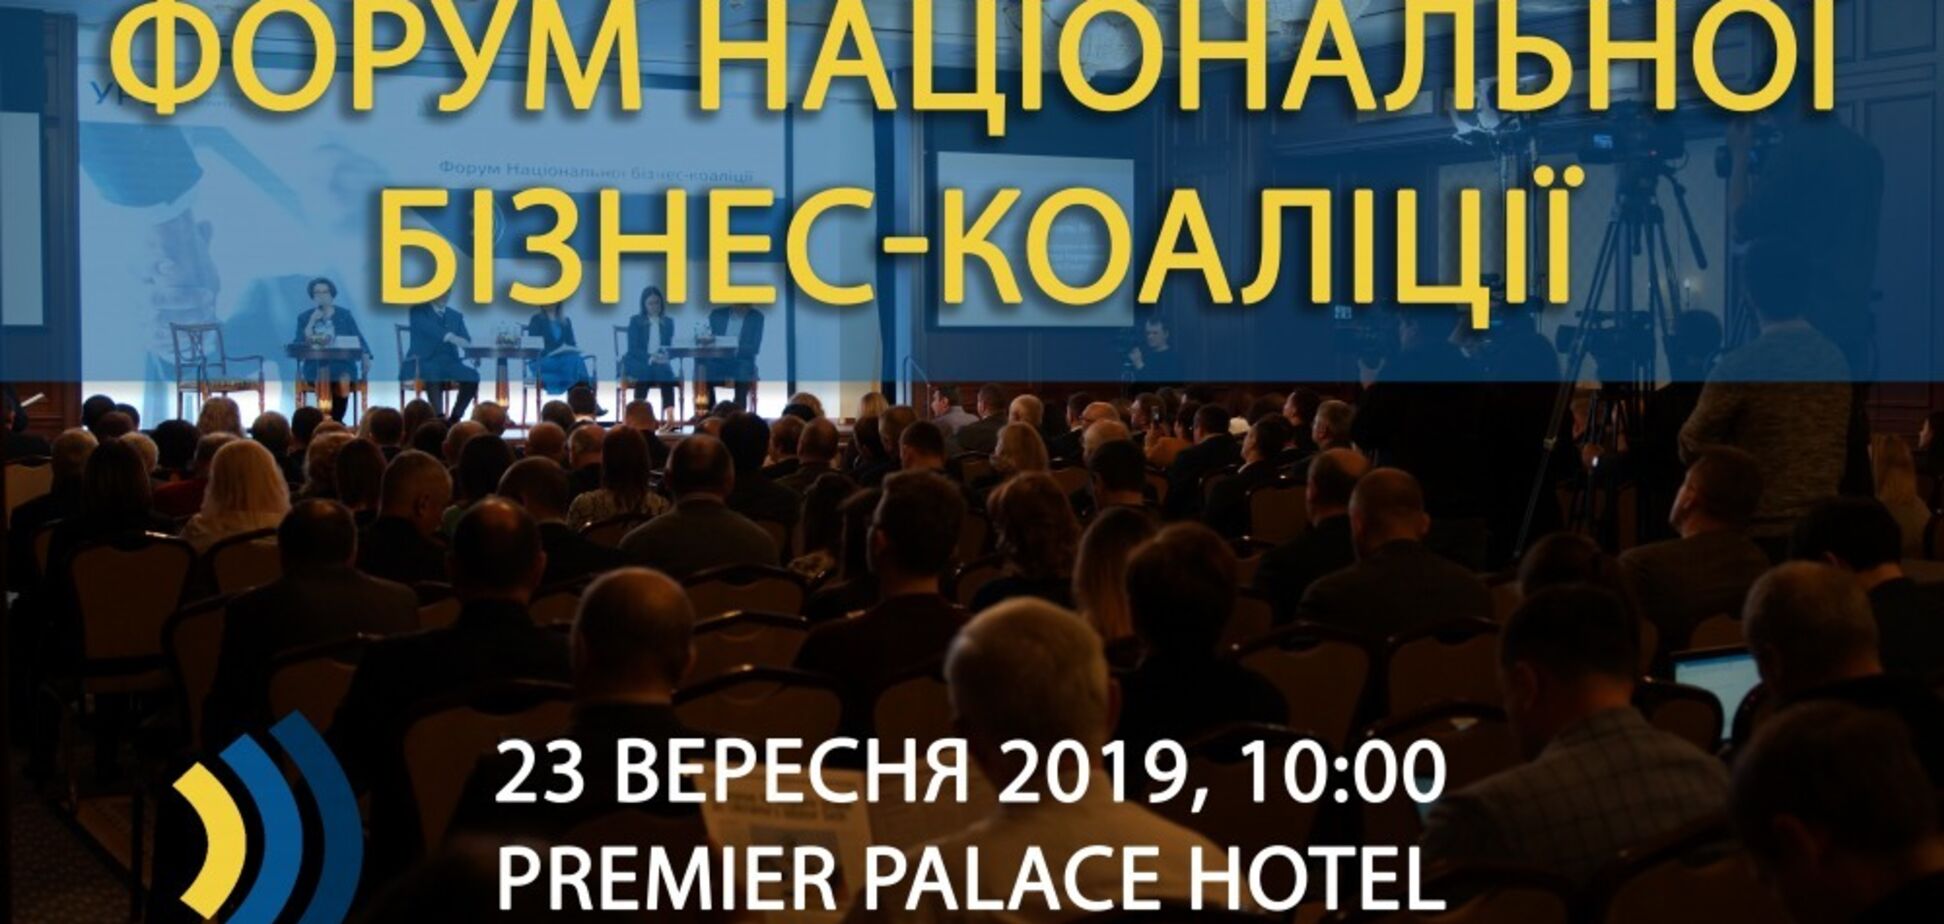 У Києві відбудеться Форум Національної бізнес-коаліції